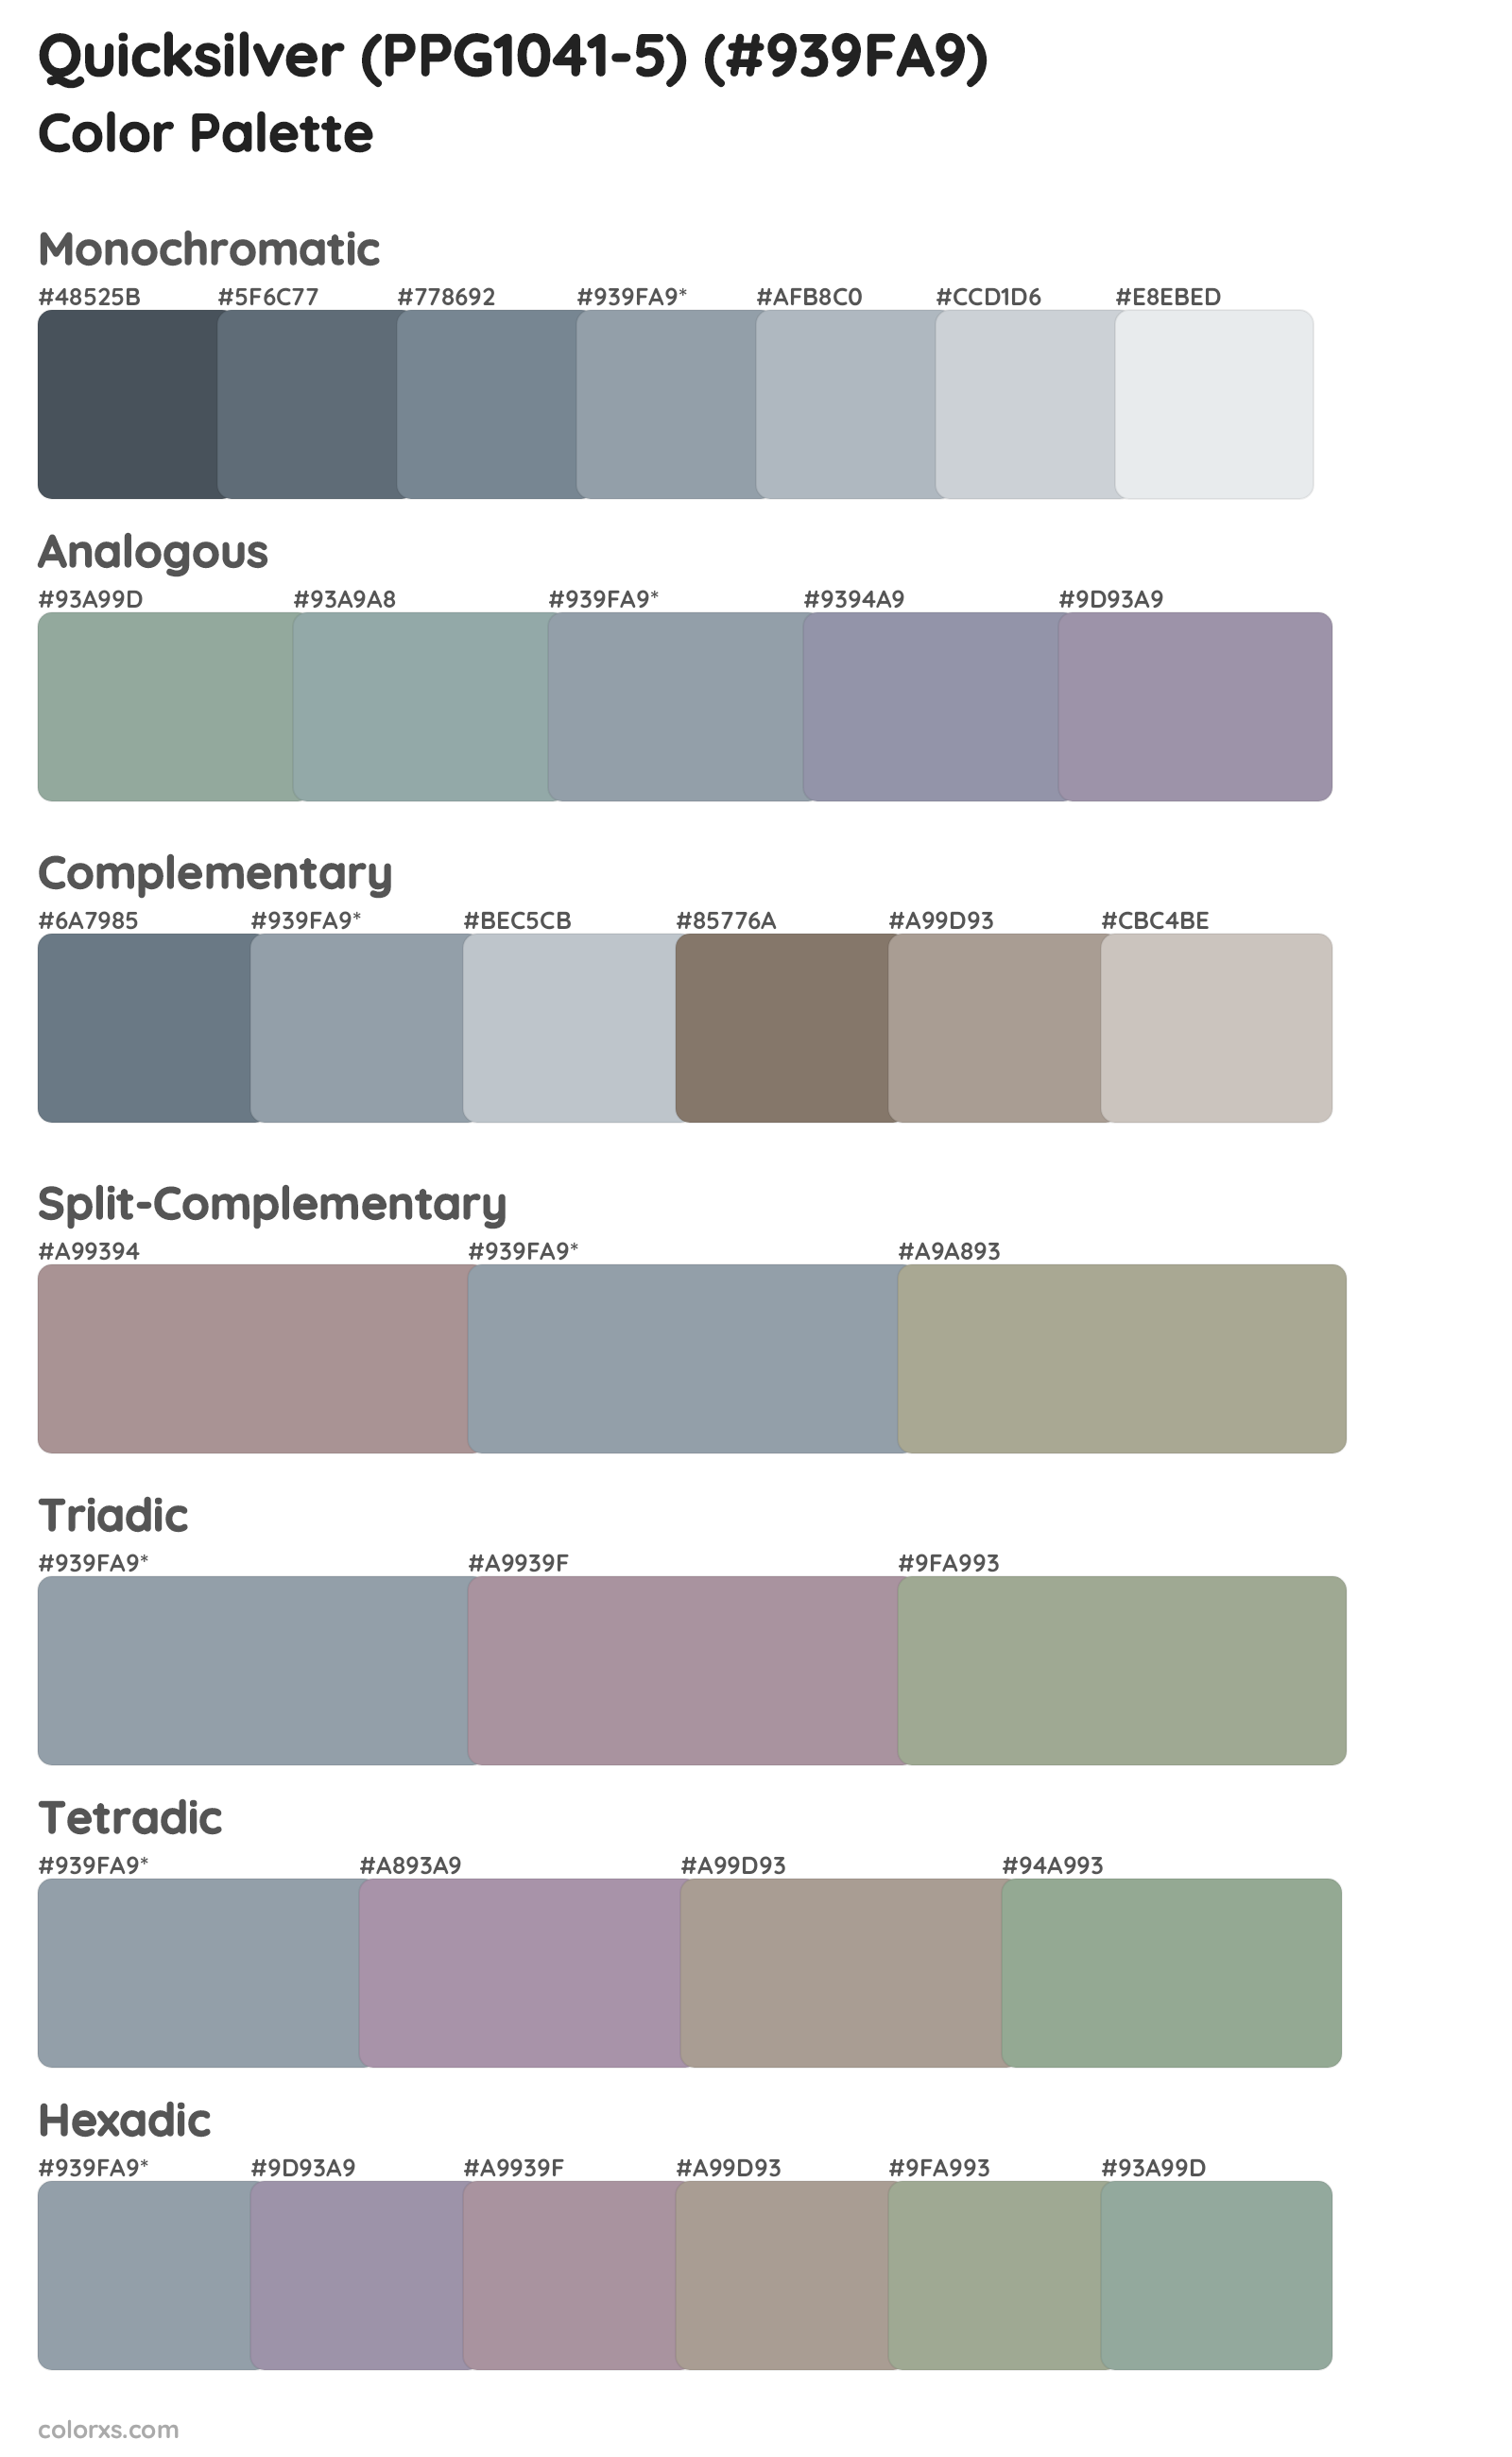 Quicksilver (PPG1041-5) Color Scheme Palettes